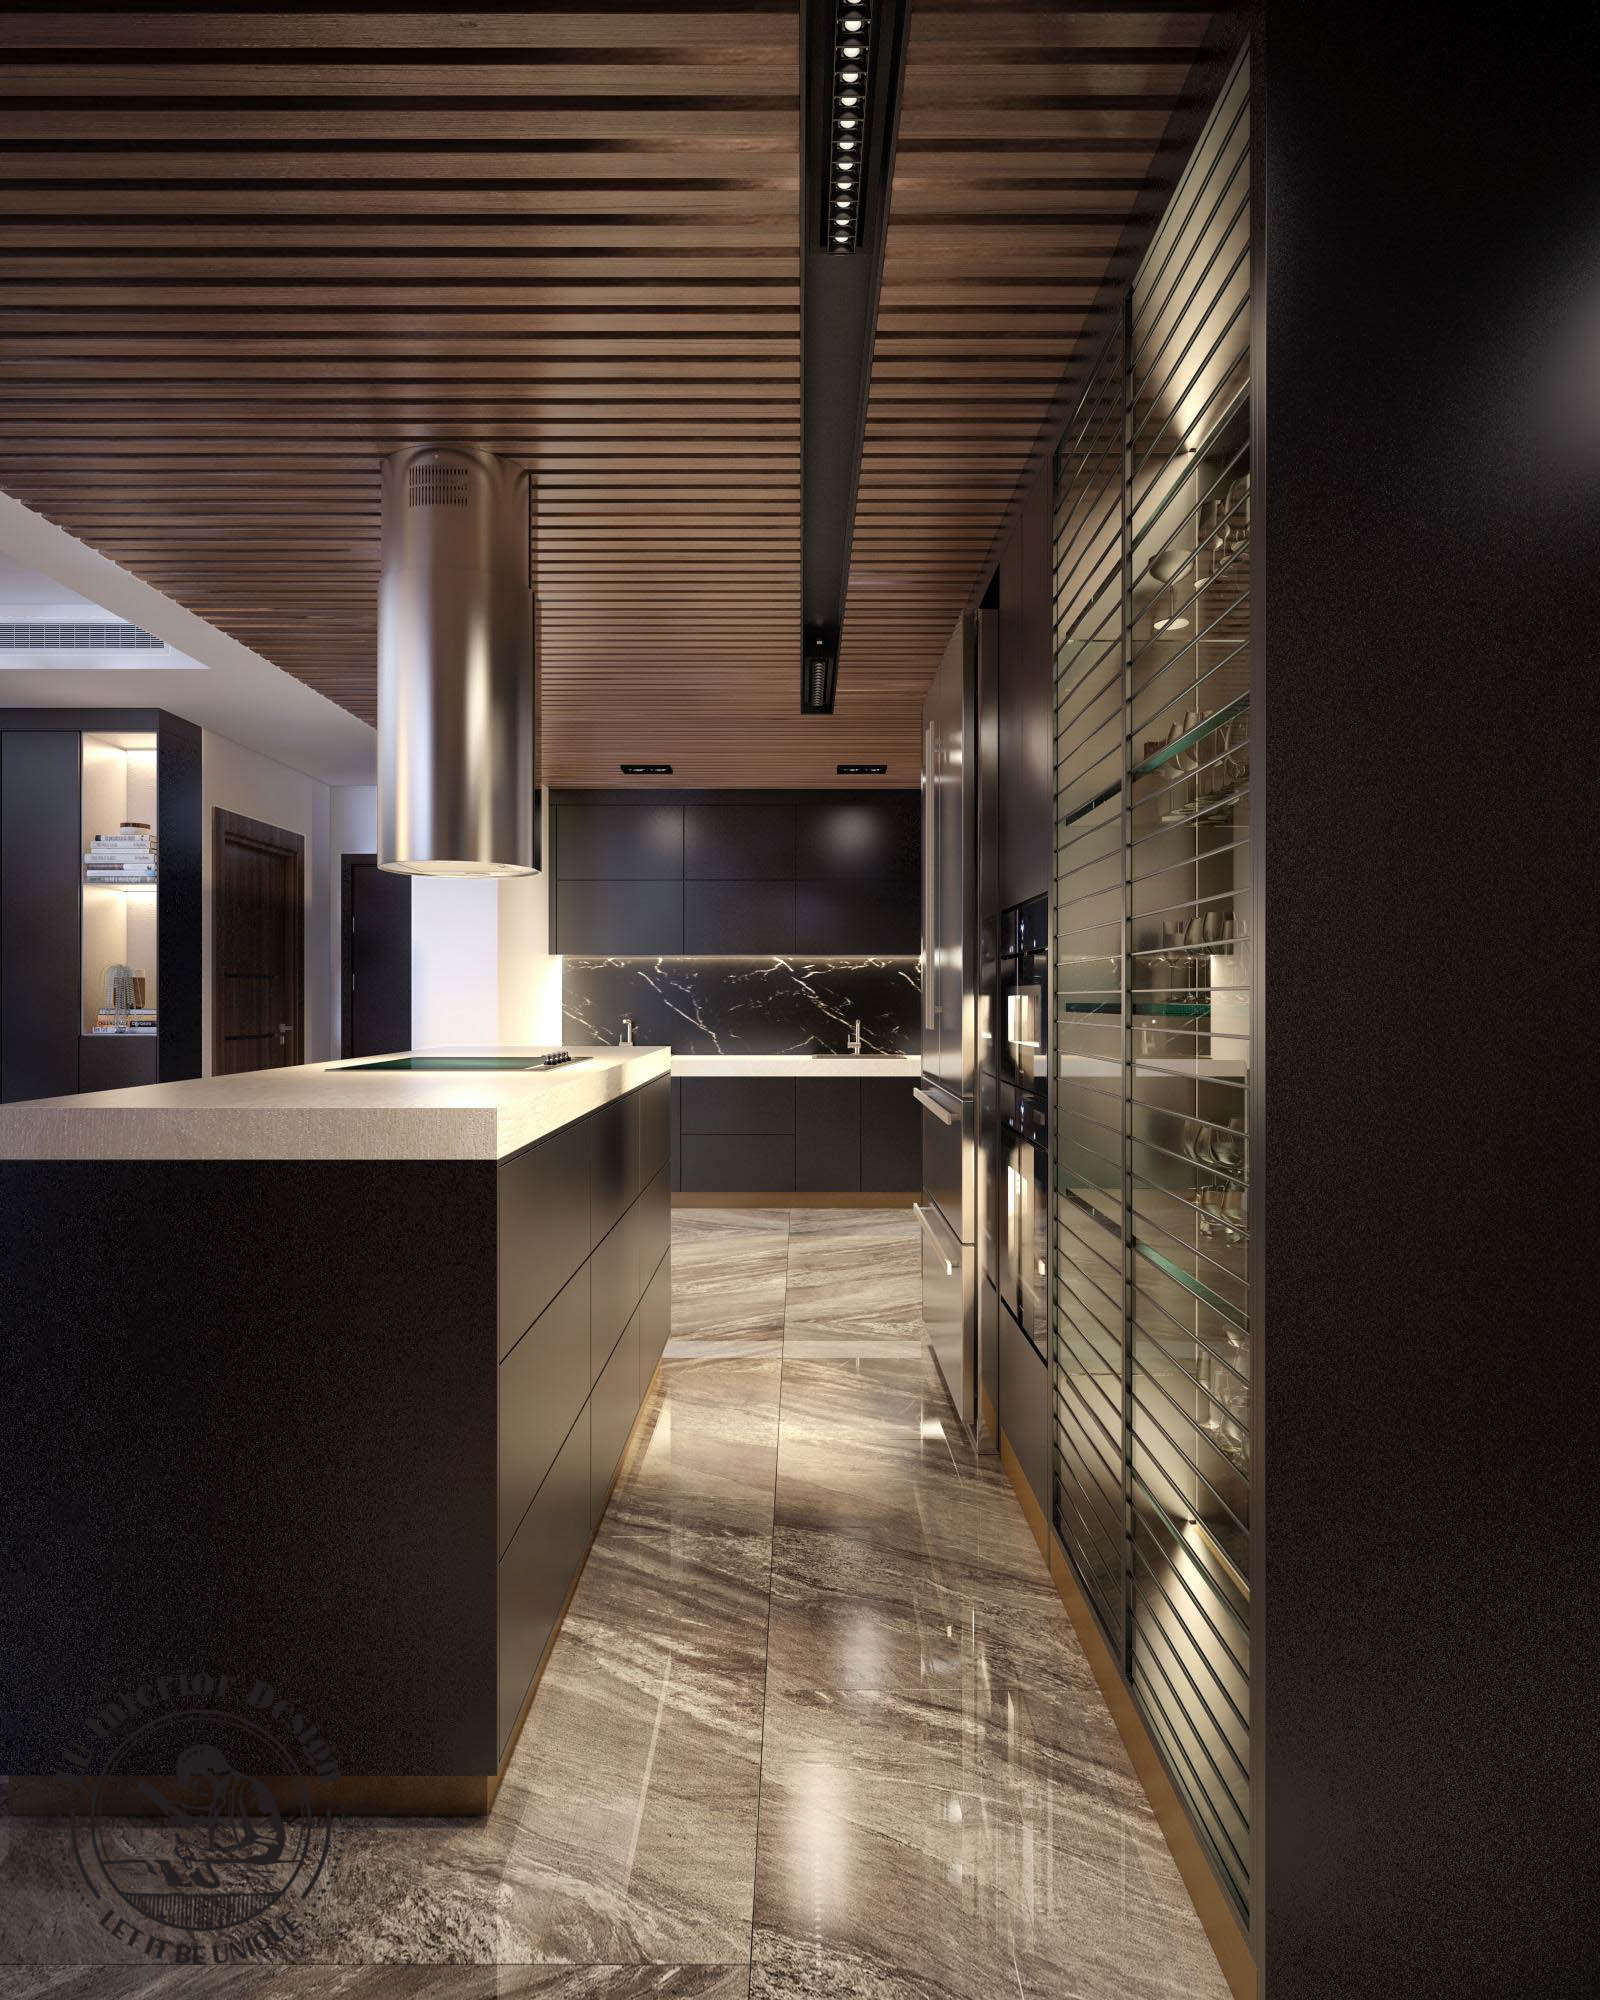 Thiết kế nội thất phòng bếp với gam màu đen huyền bí, dễ dàng vệ sinh | Dự án căn hộ cao cấp Saigon Pearl.